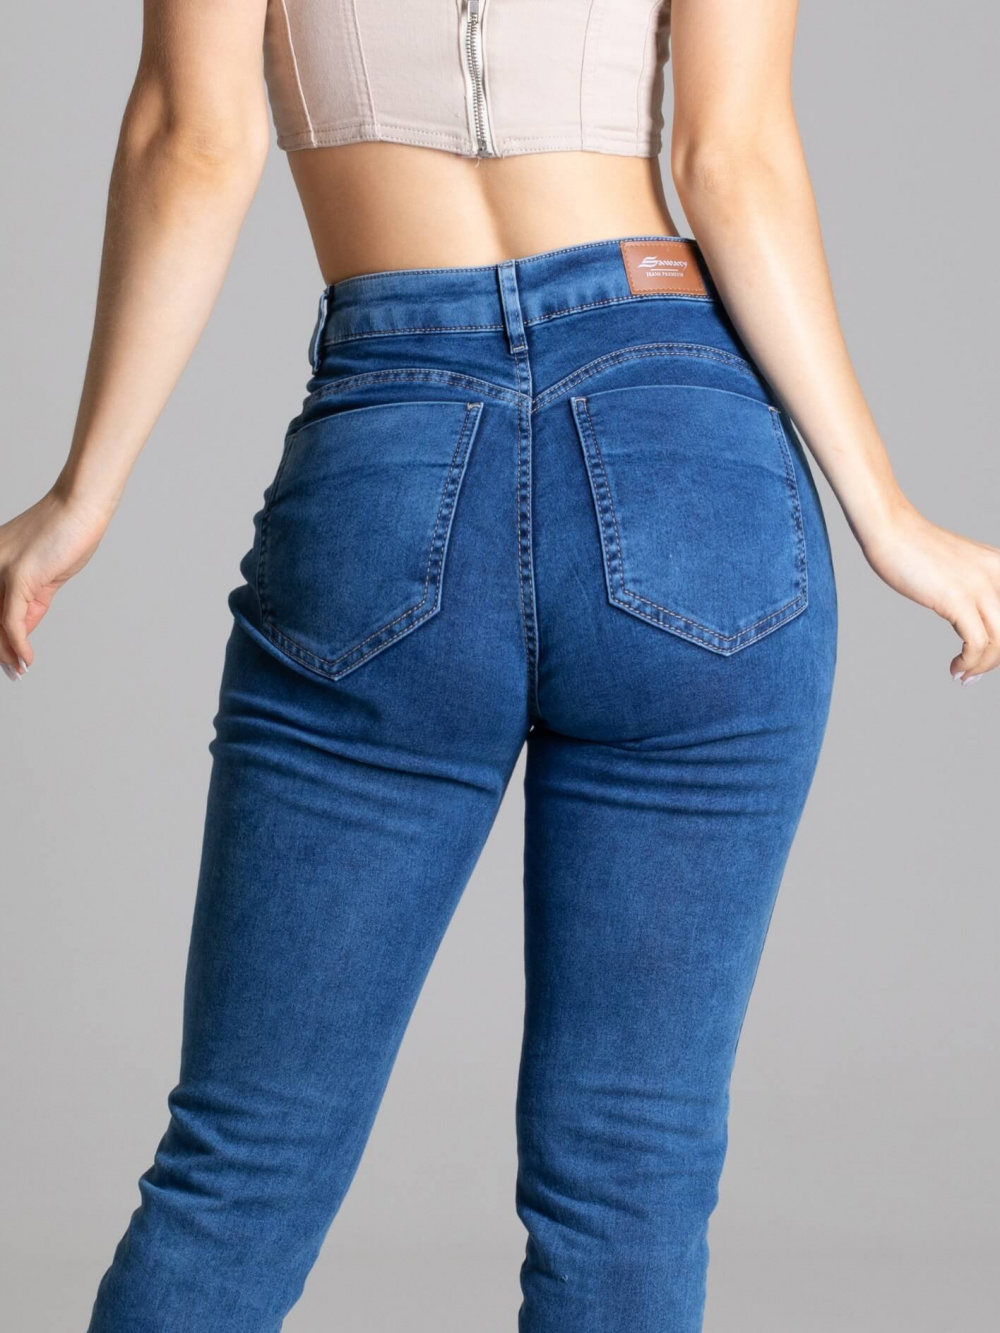 Calça Jeans Feminina Skinny Sawary Premium Elastano Confortável